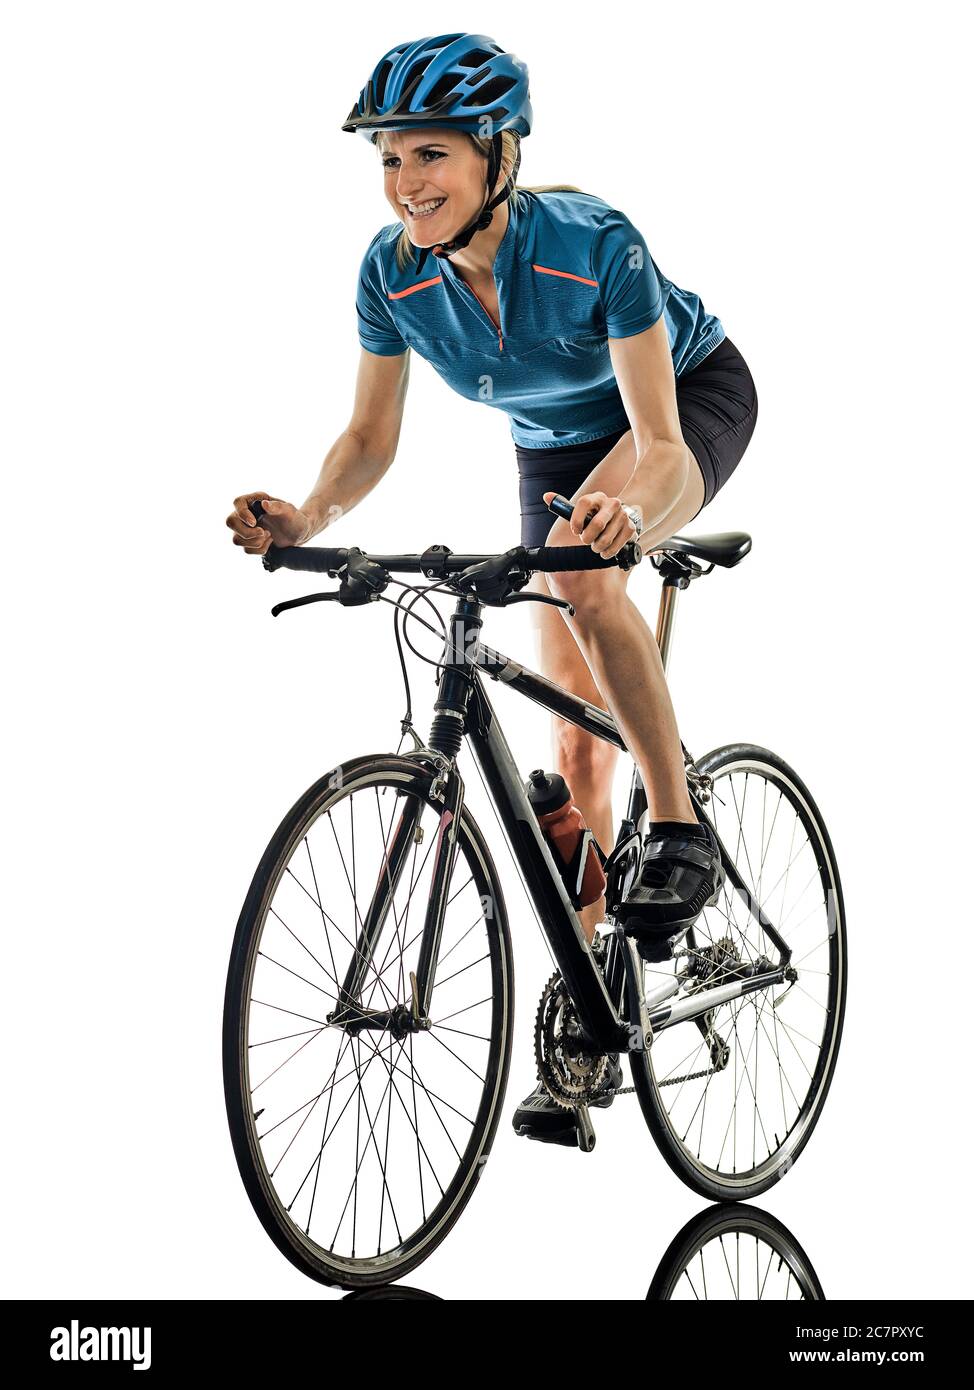 Eine kaukasische Radfahrer Frau Radfahren Reiten Fahrrad lächelt glücklich auf weißem Hintergrund Stockfoto